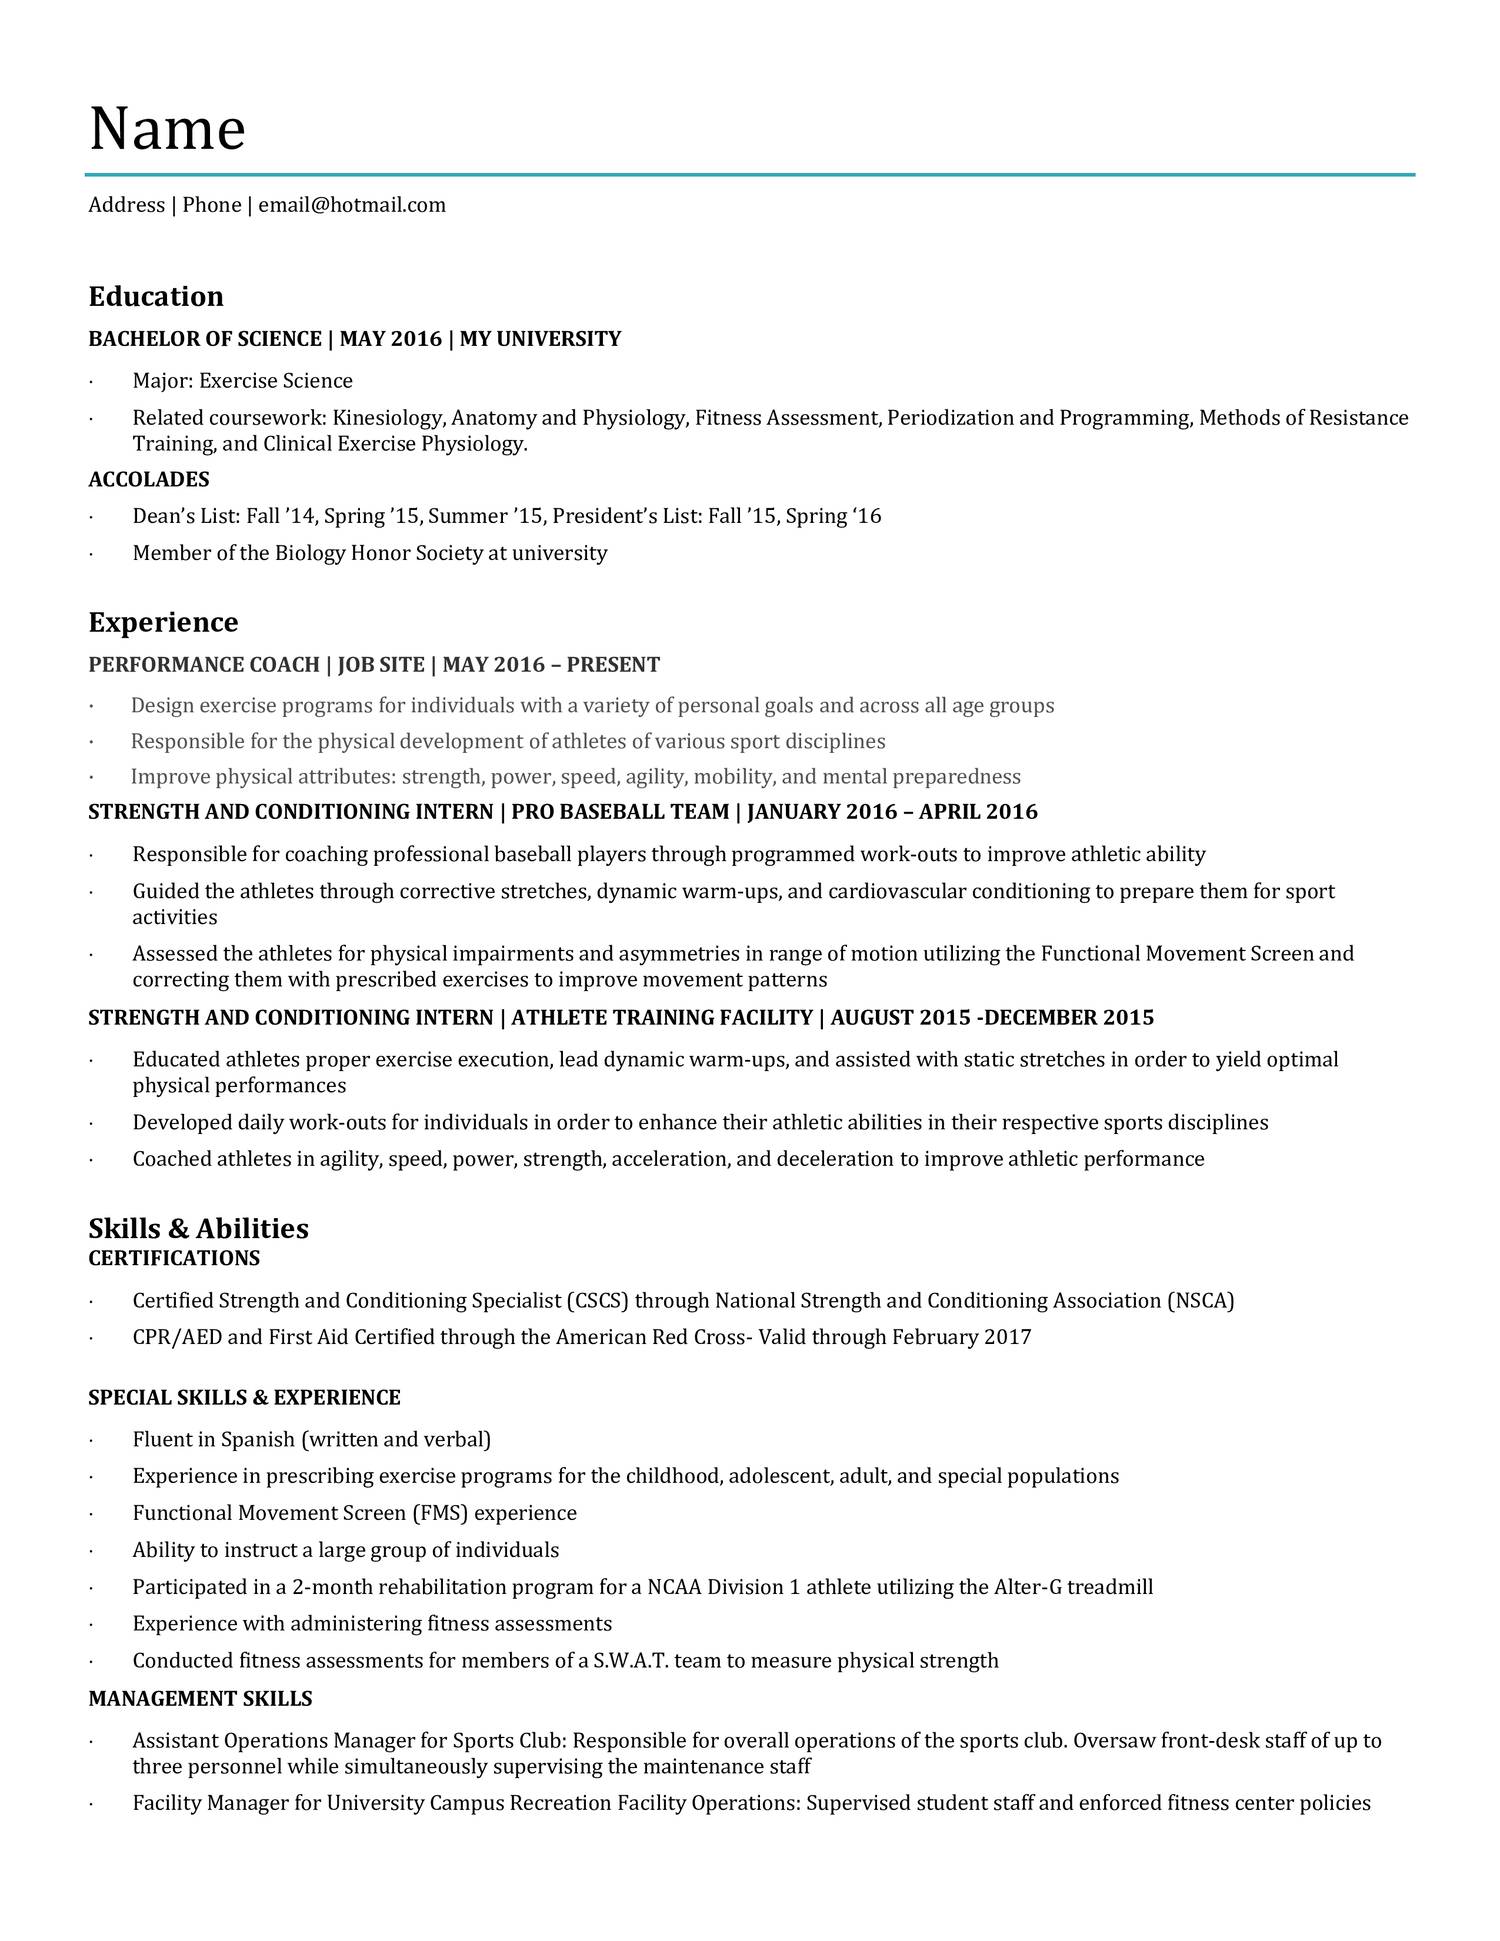 resume template word reddit